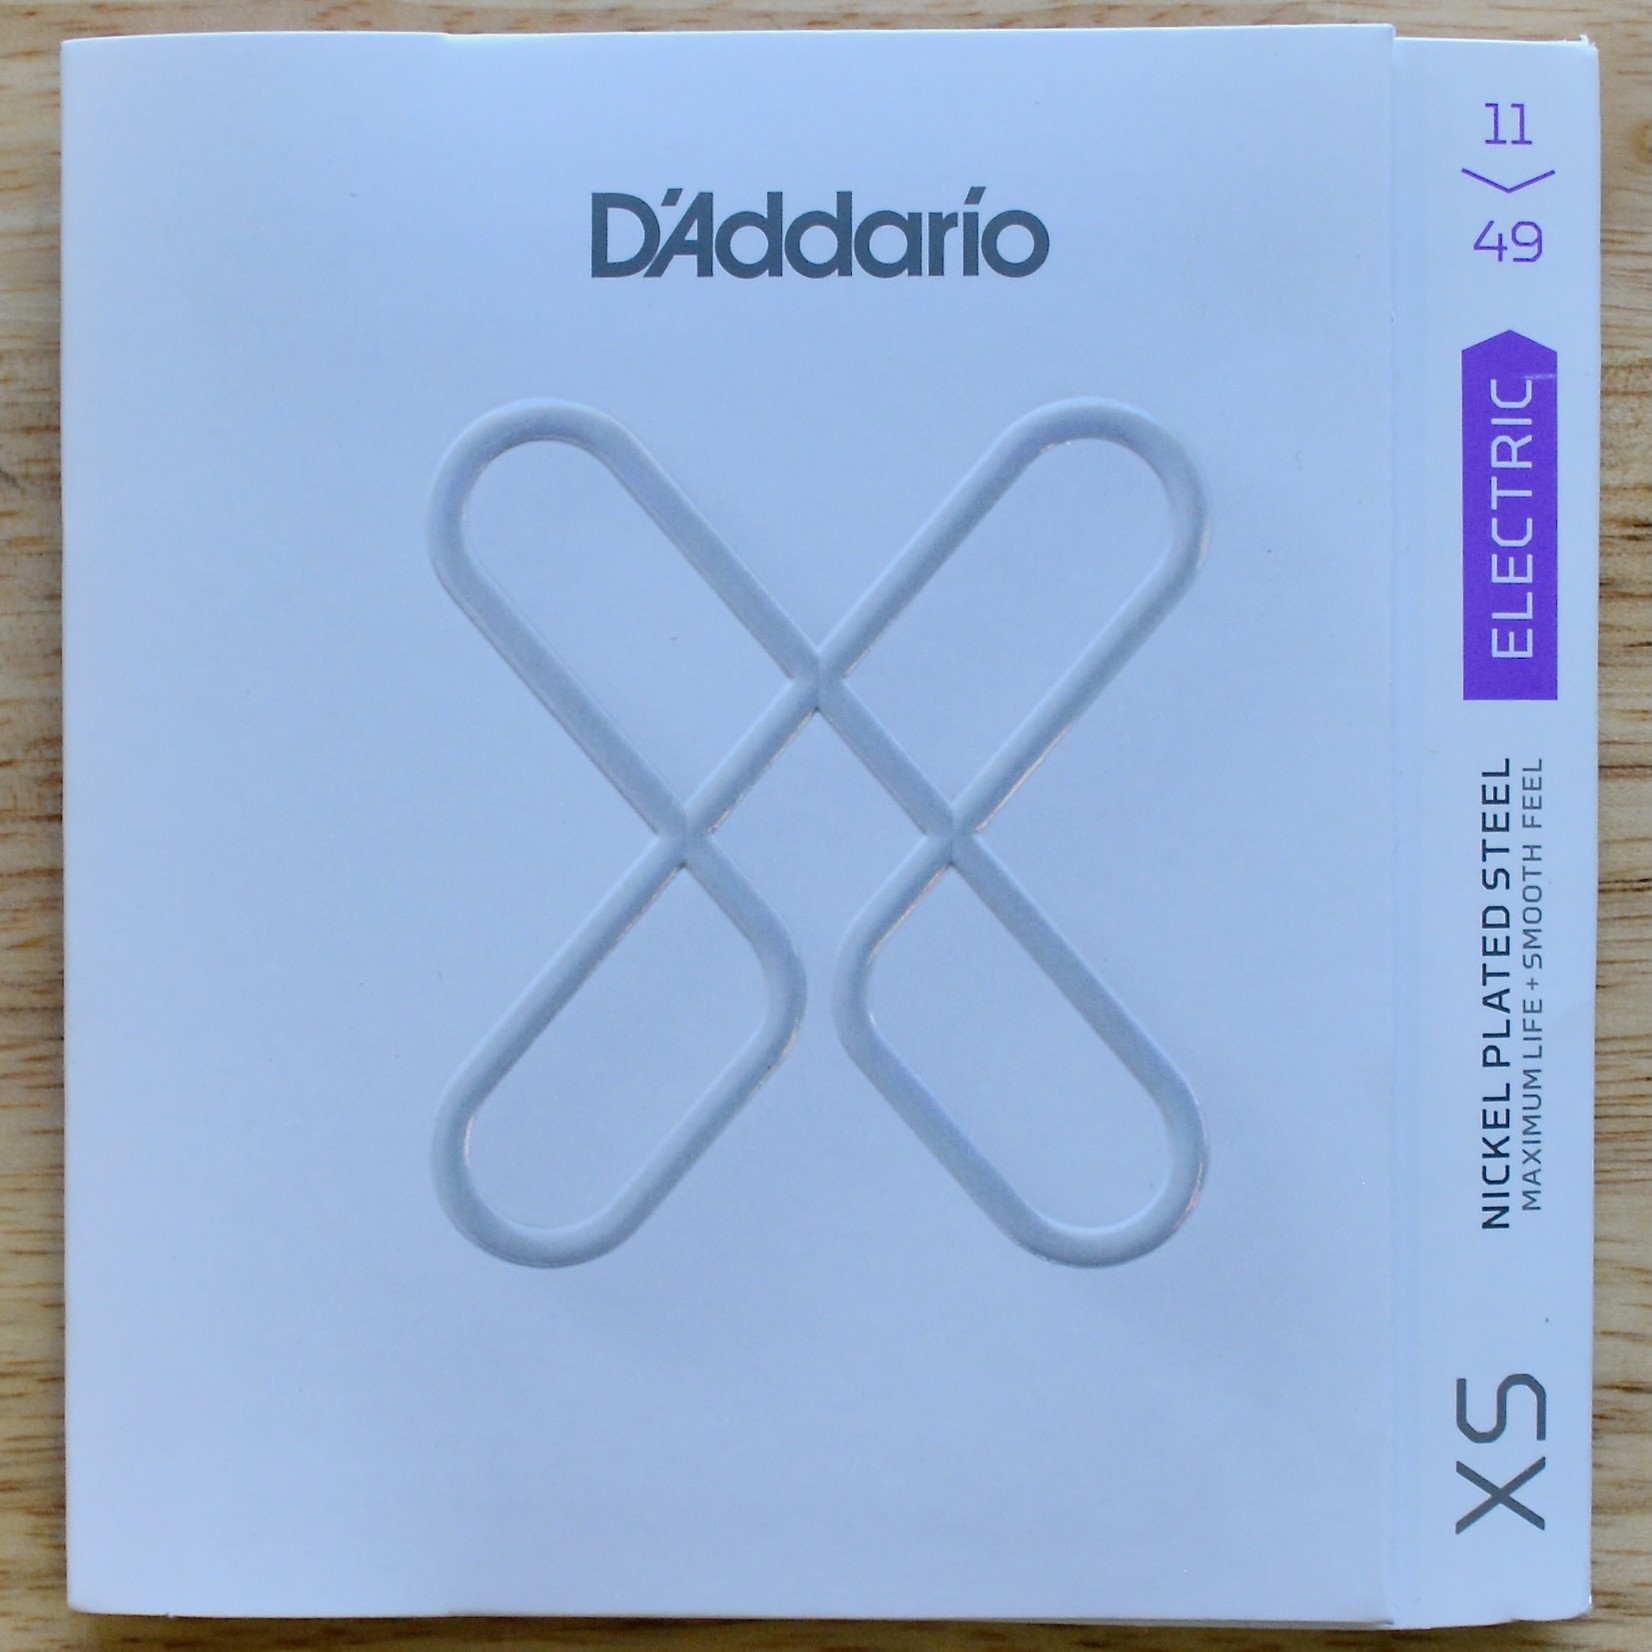 D'Addario D'Addario XS Nickel Electic Strings Medium 11-49